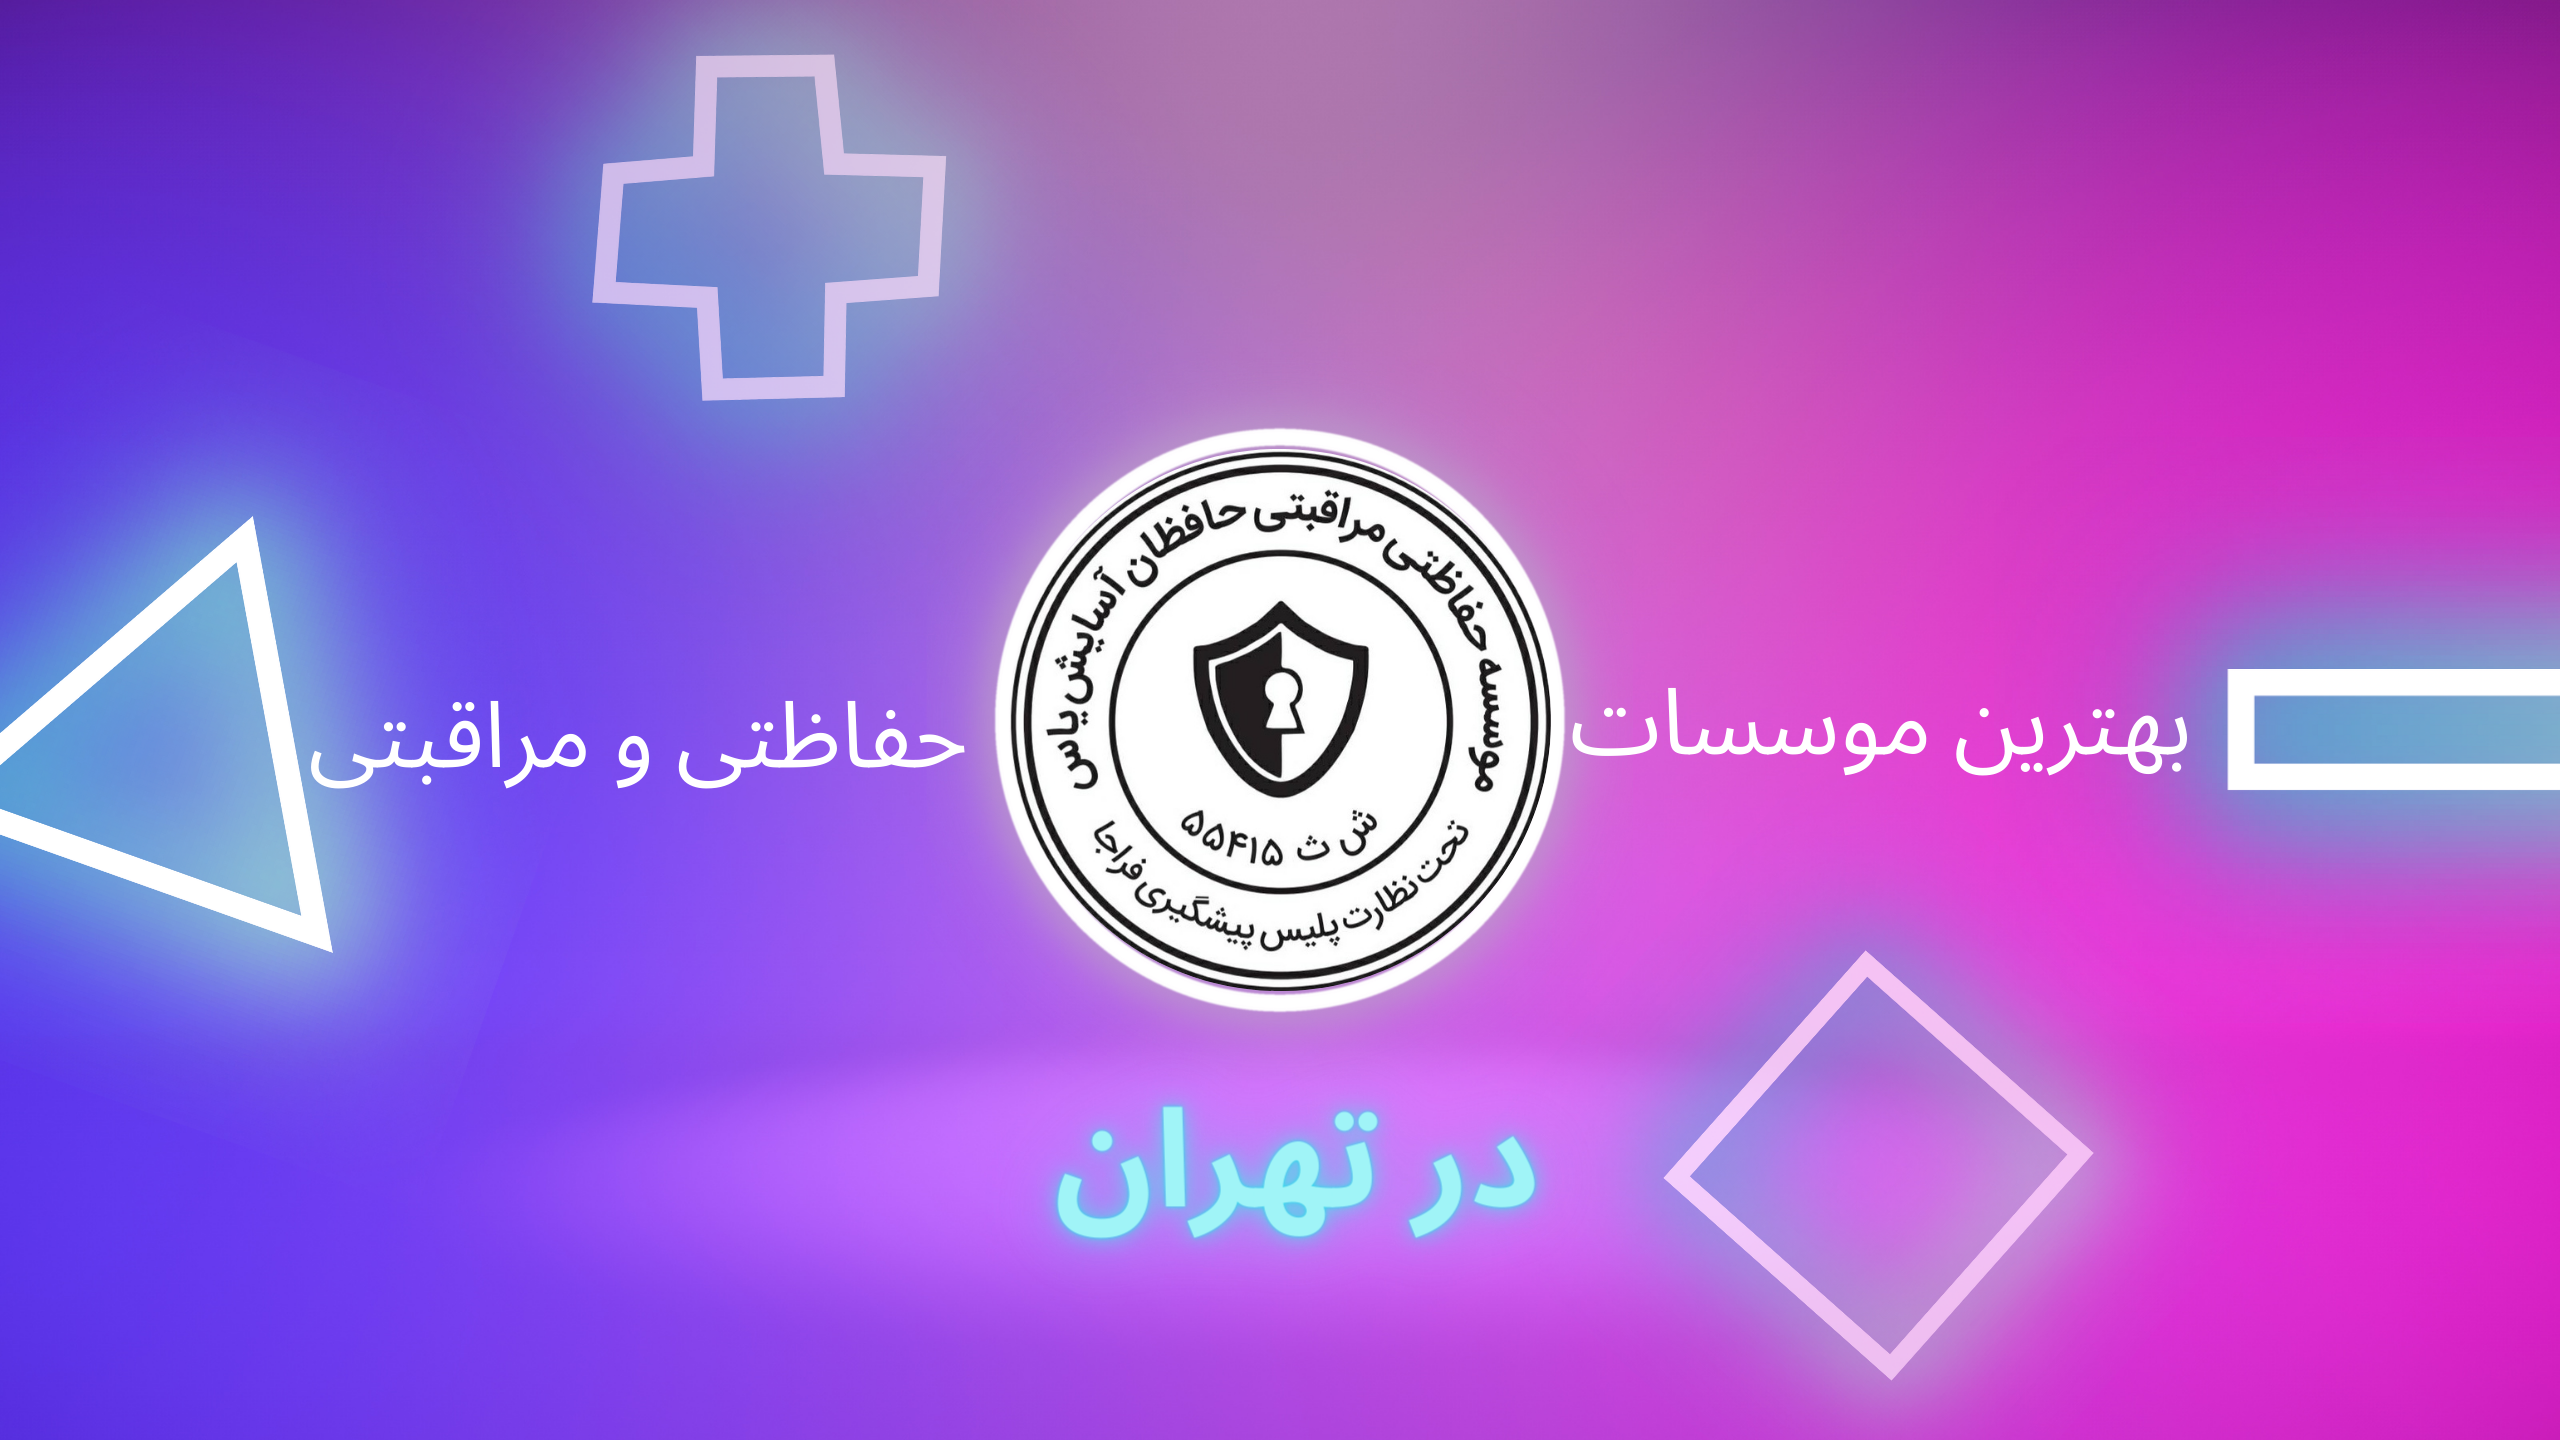 بهترین موسسه حفاظتی مراقبتی در تهران